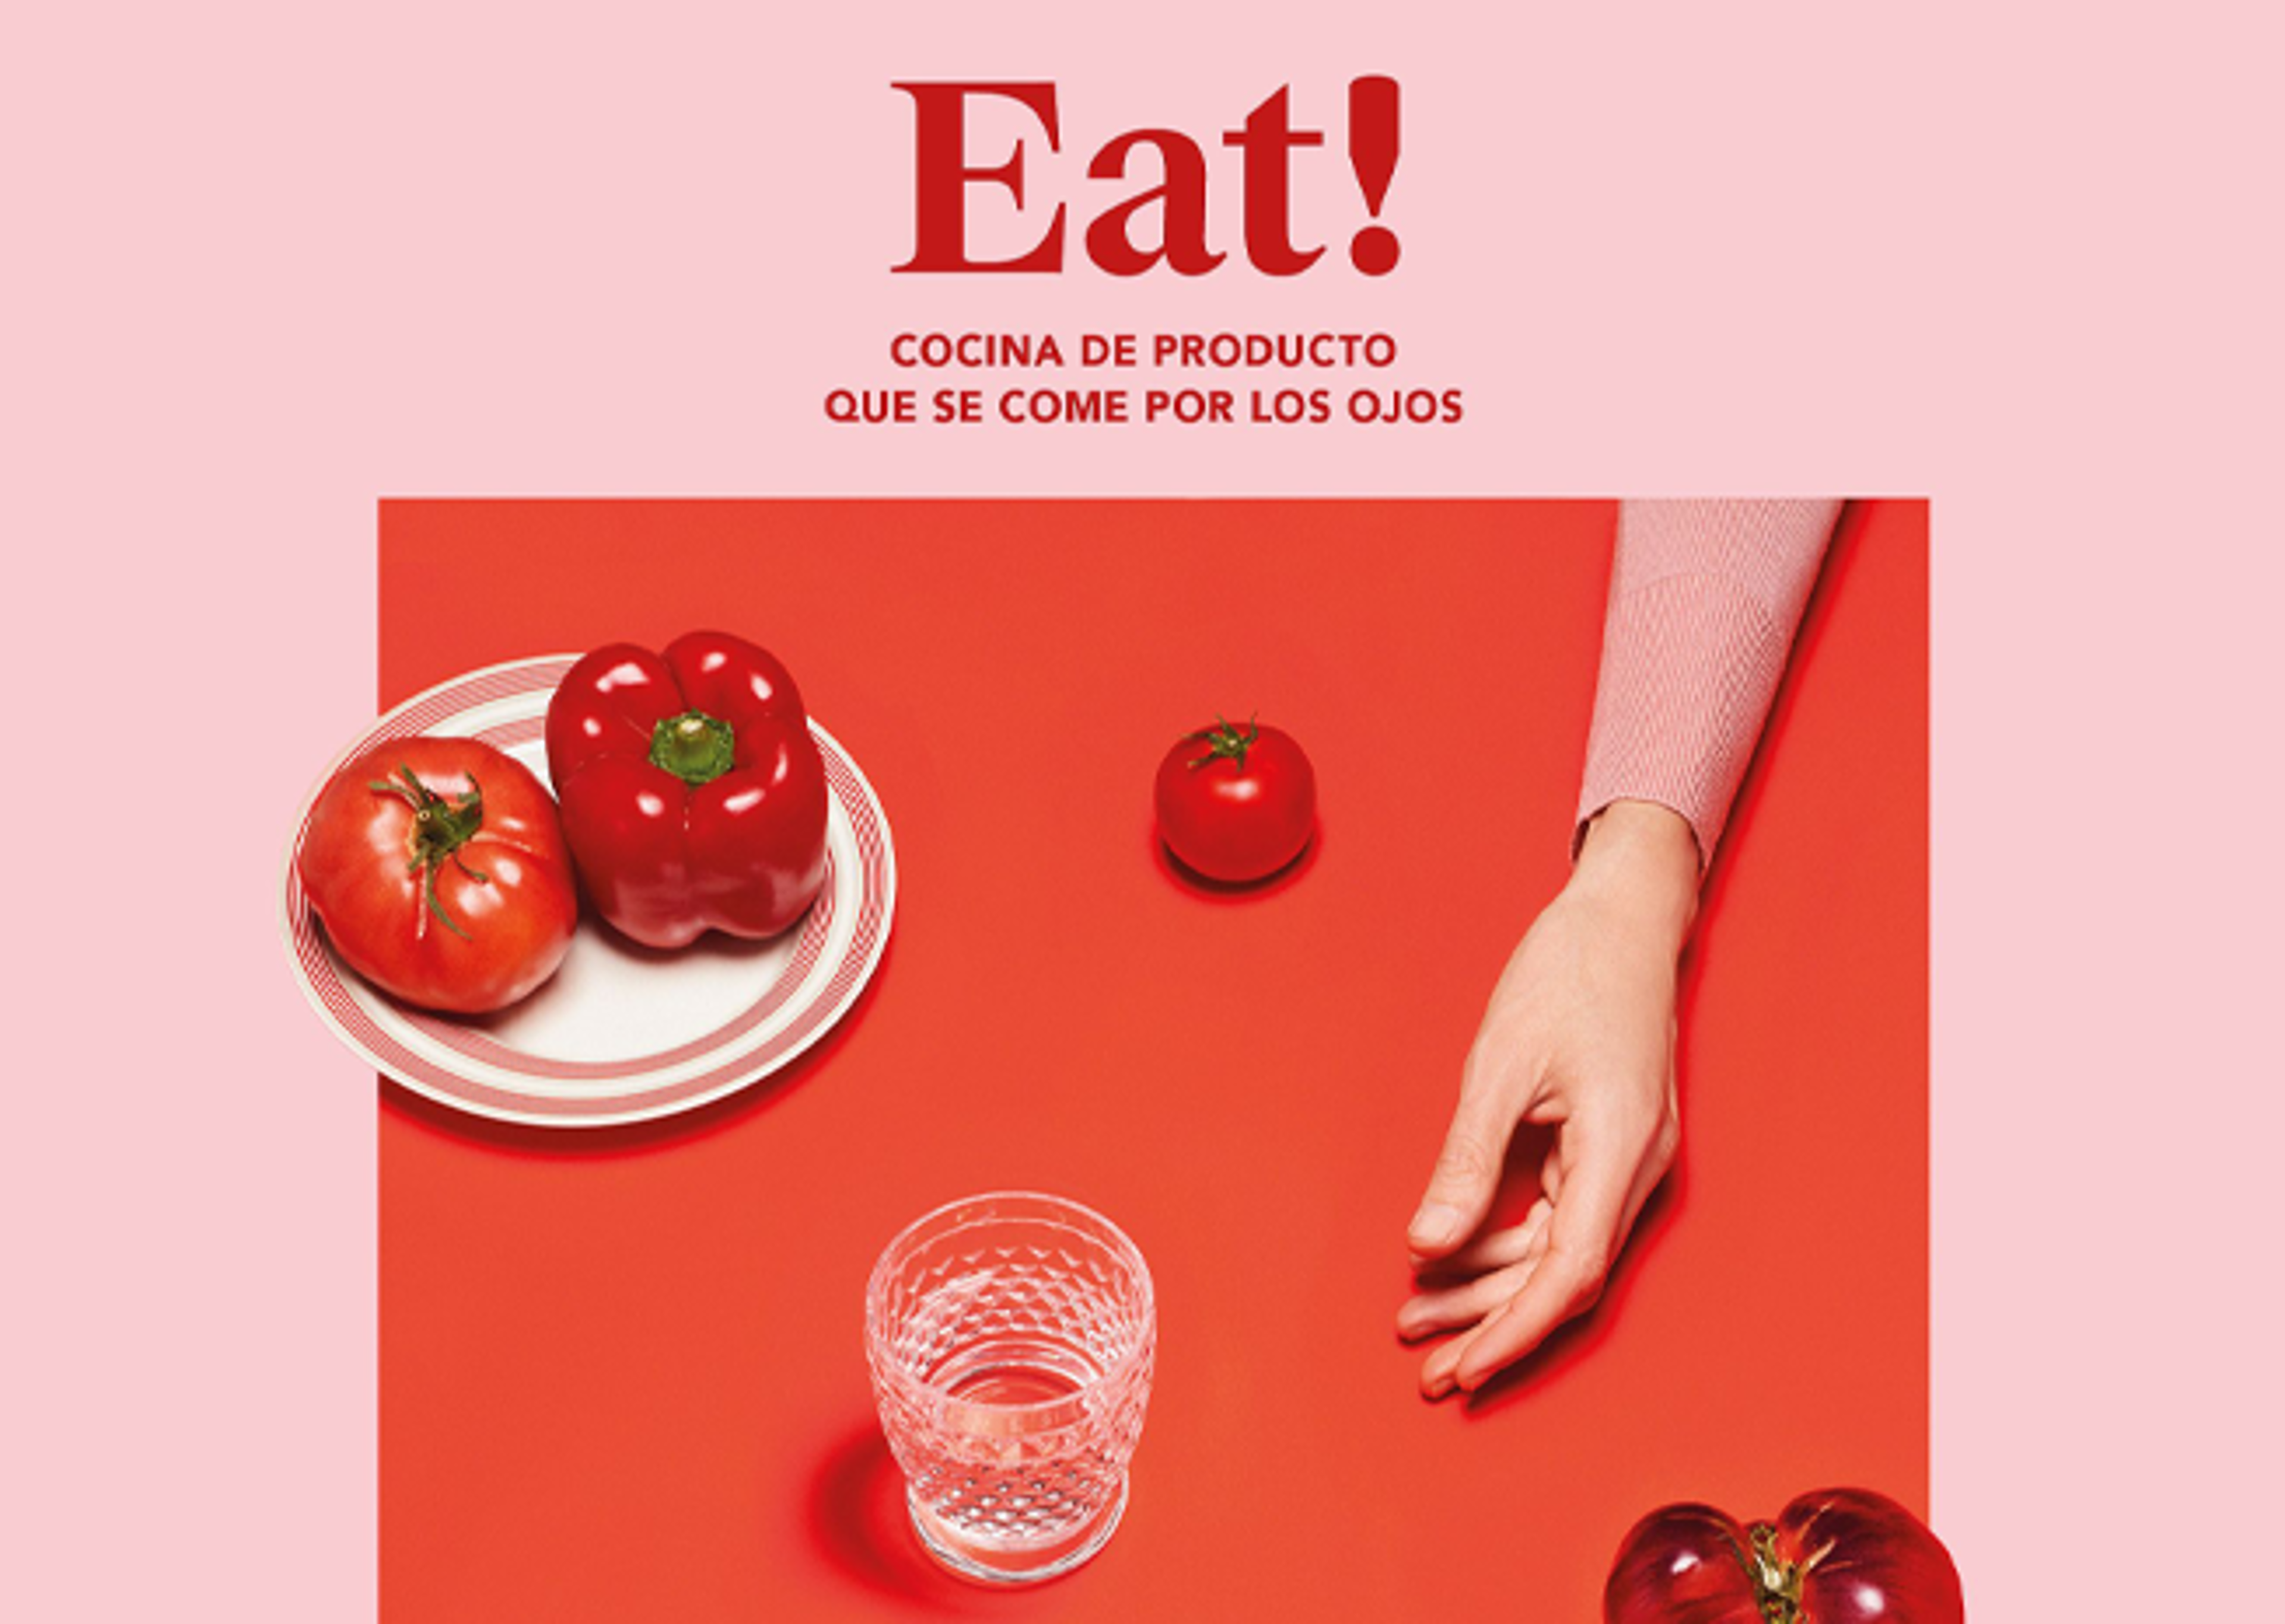 Arranjament elegant d'aliments amb tomàquets i un pebrot en un plat, un got i una mà, tot en una superfície vermella amb el text "Eat!"